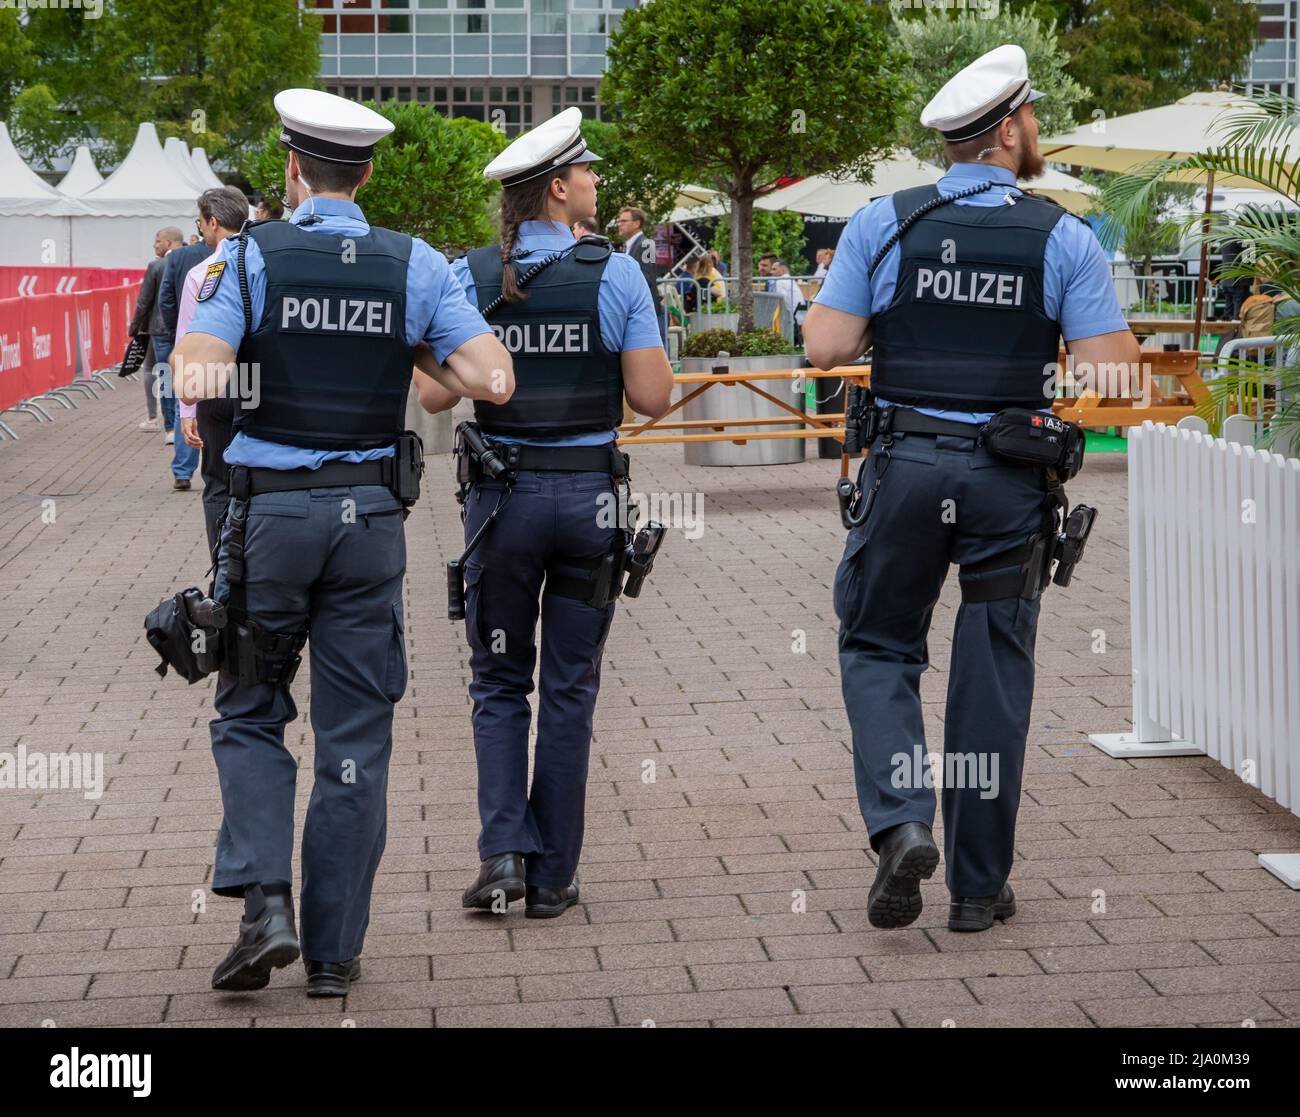 La police allemande patrouille au salon automobile de l'IAA de Francfort. Allemagne - 11 septembre 2019 Banque D'Images